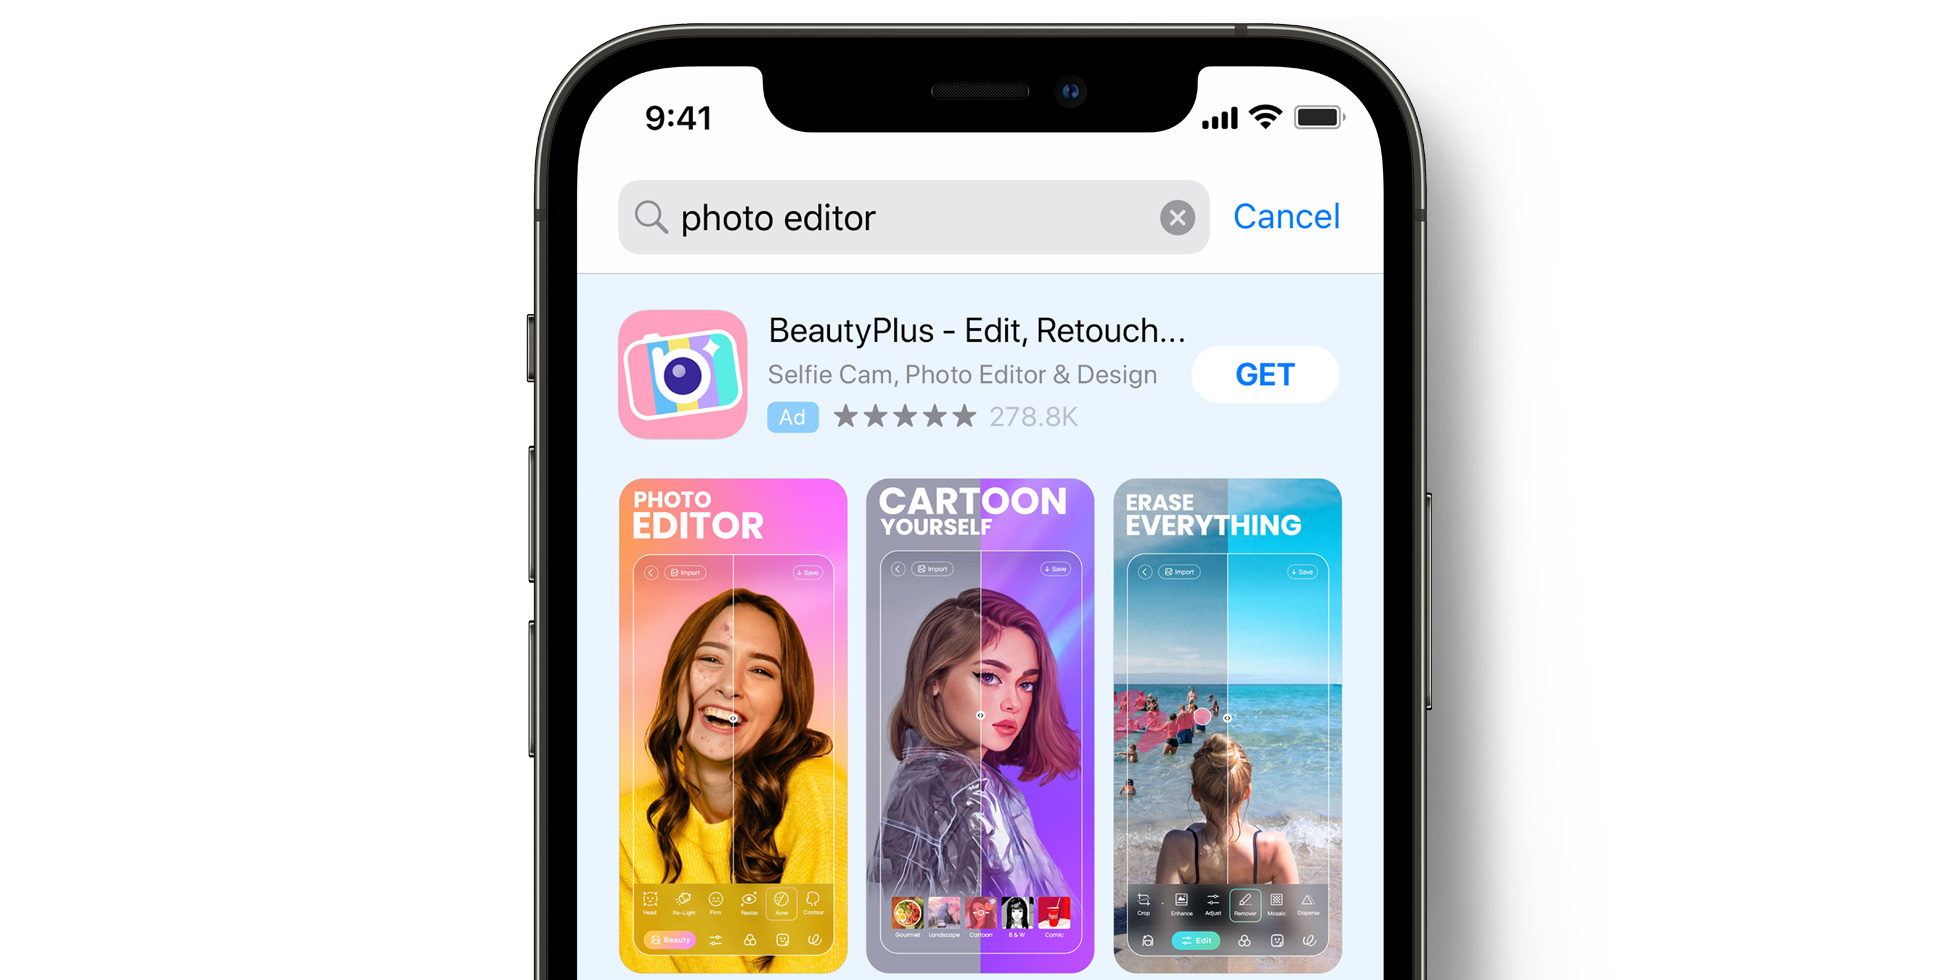 App Store 中的 BeautyPlus 广告